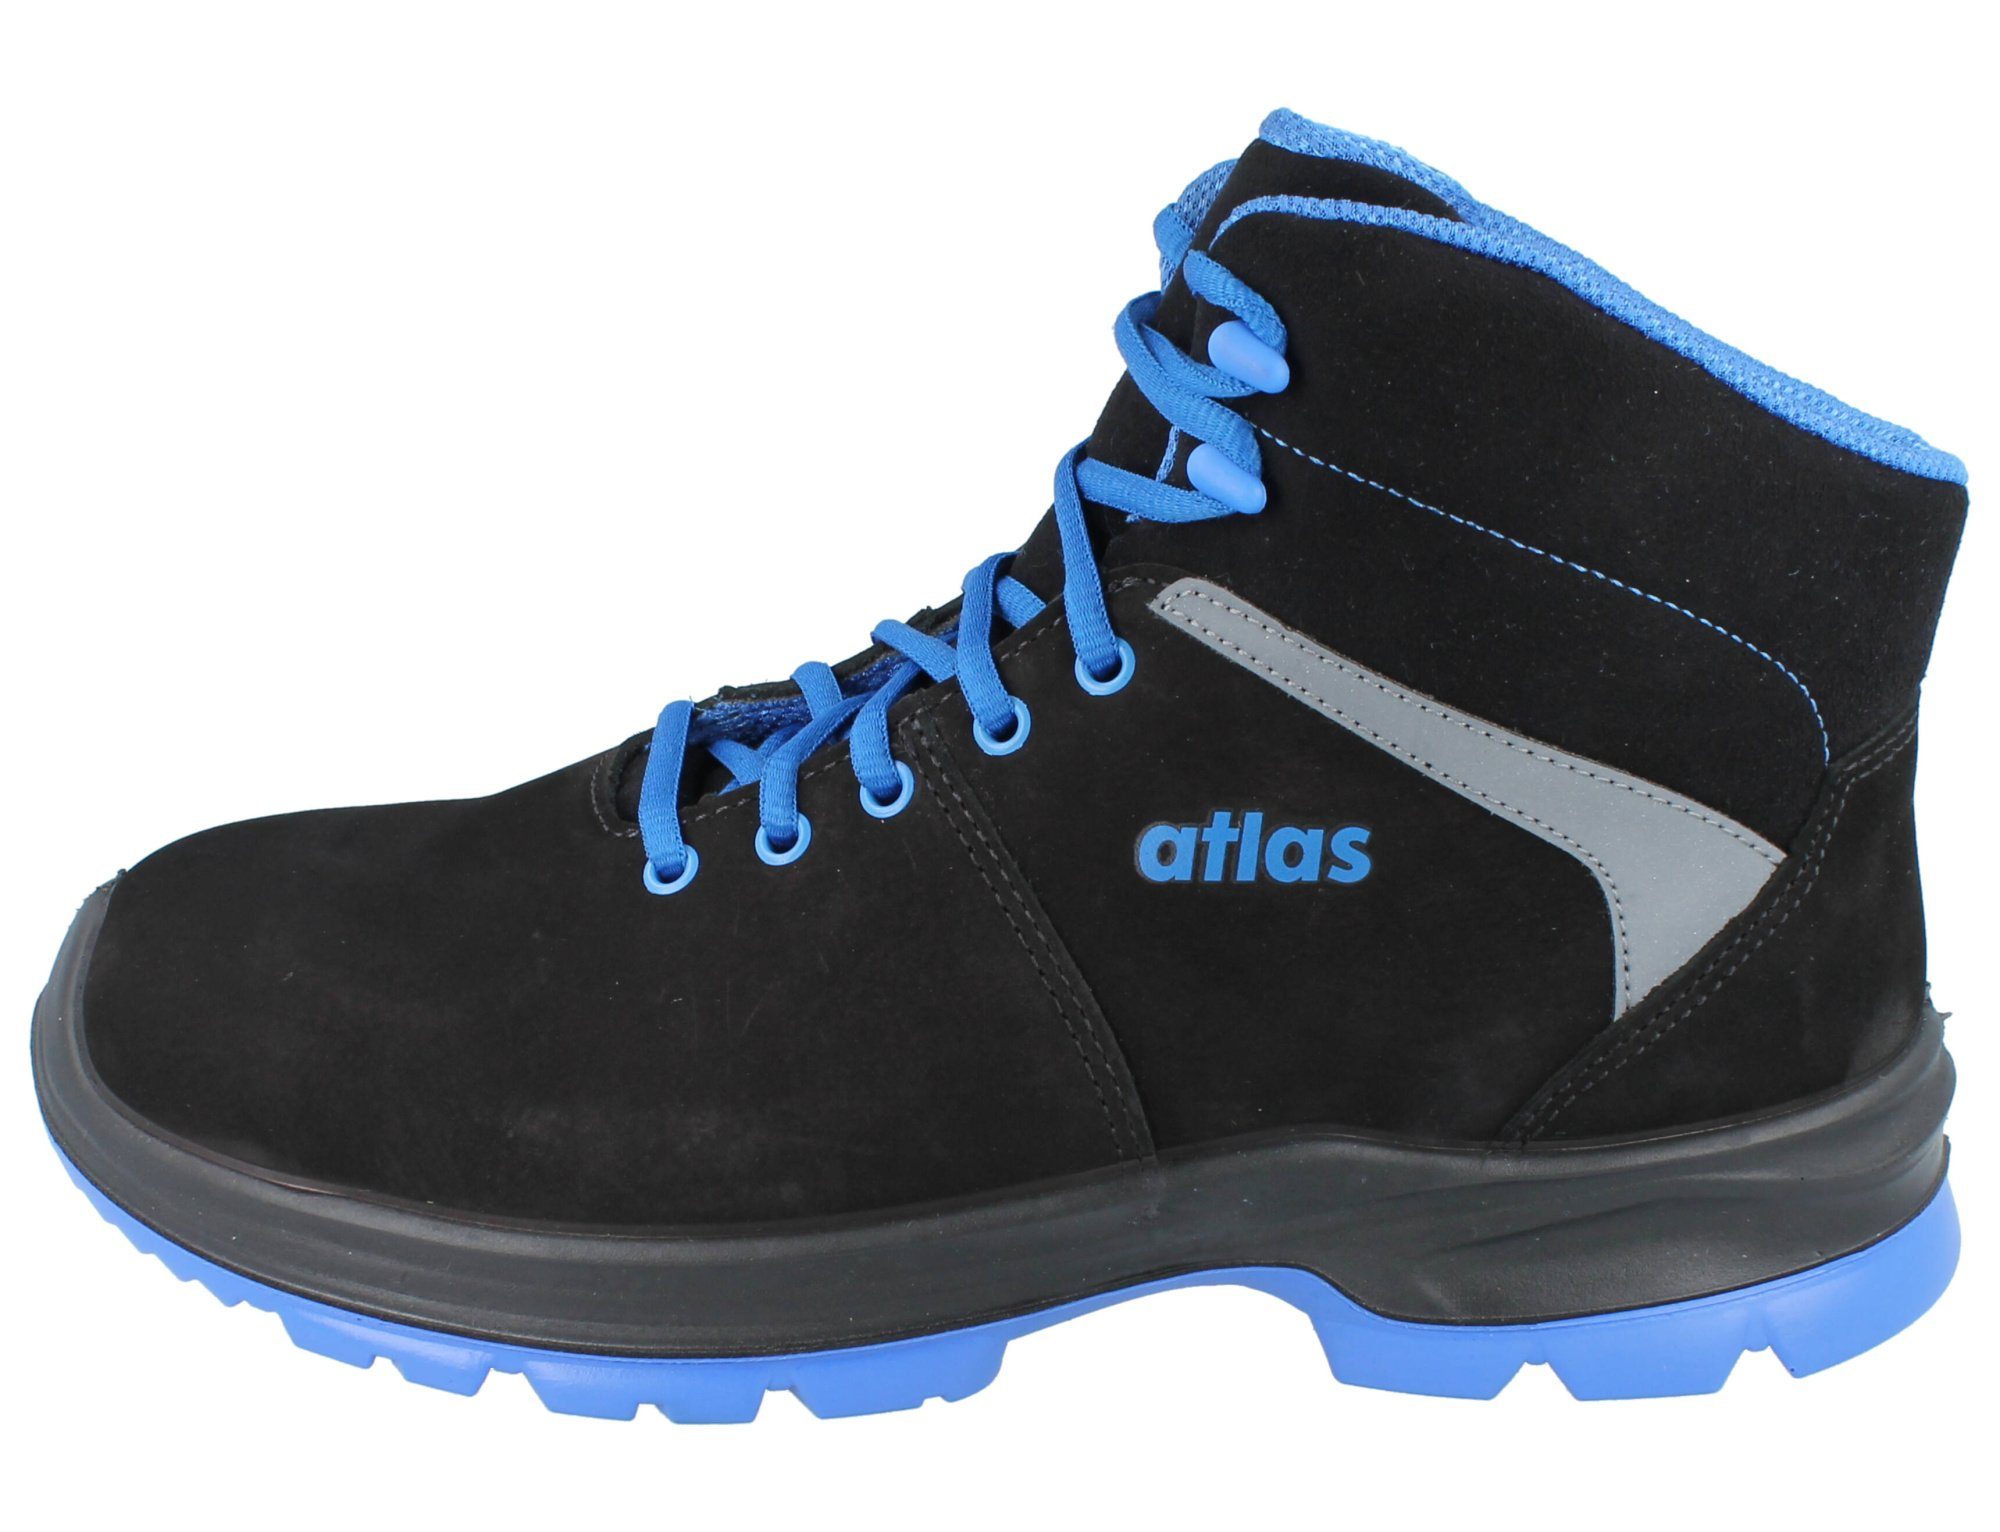 Atlas SL ESD EN20345 494 2.0 805 blue XP S3, Atlas Sicherheitsschuhe Sicherheitsschuh Schuhe